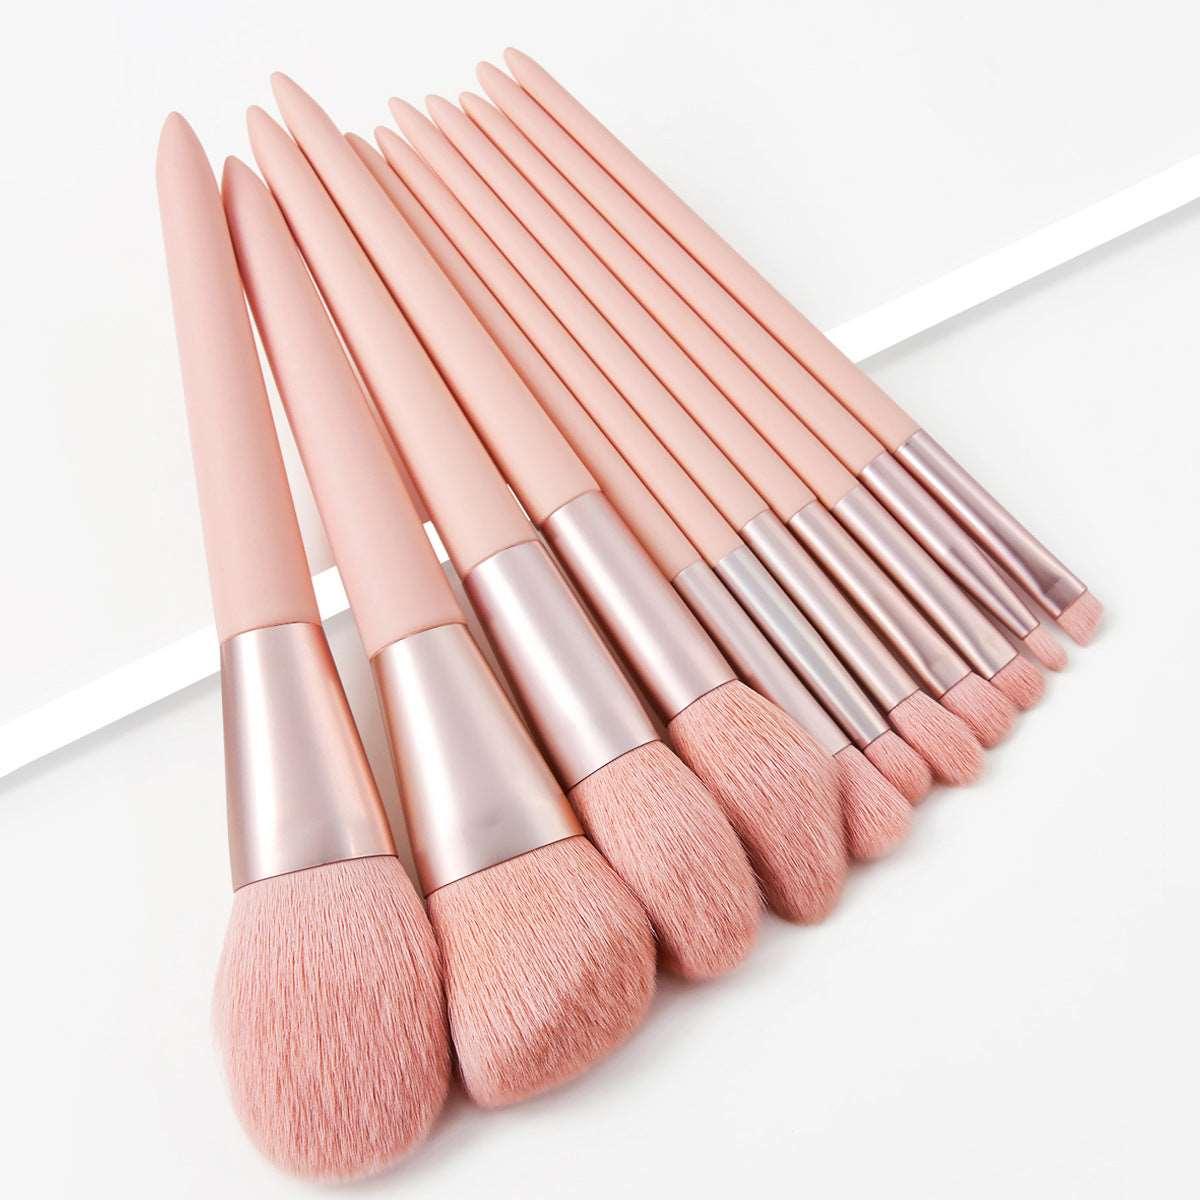  Pink Makeup Brush Set cashymart